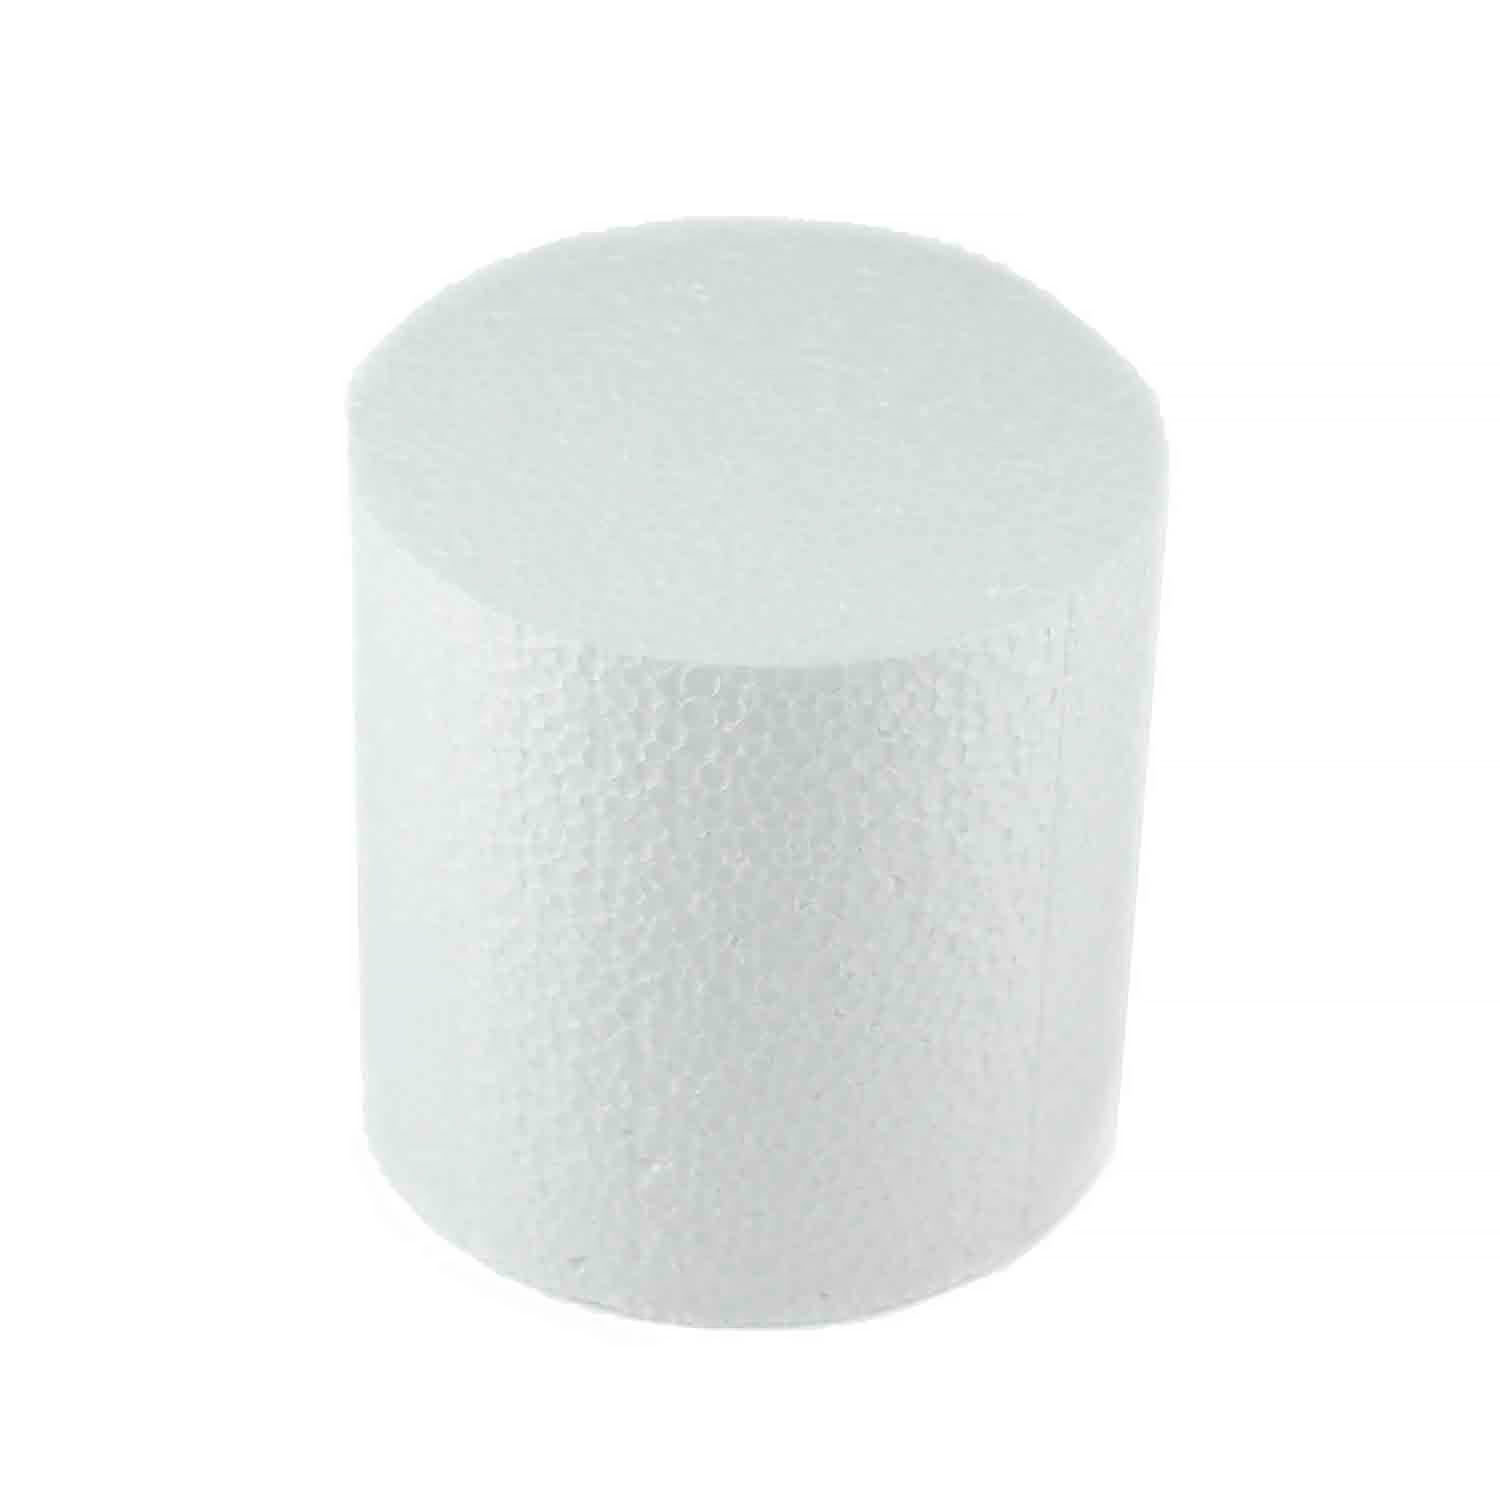 4" x 4" Round Styrofoam Cake Dummy